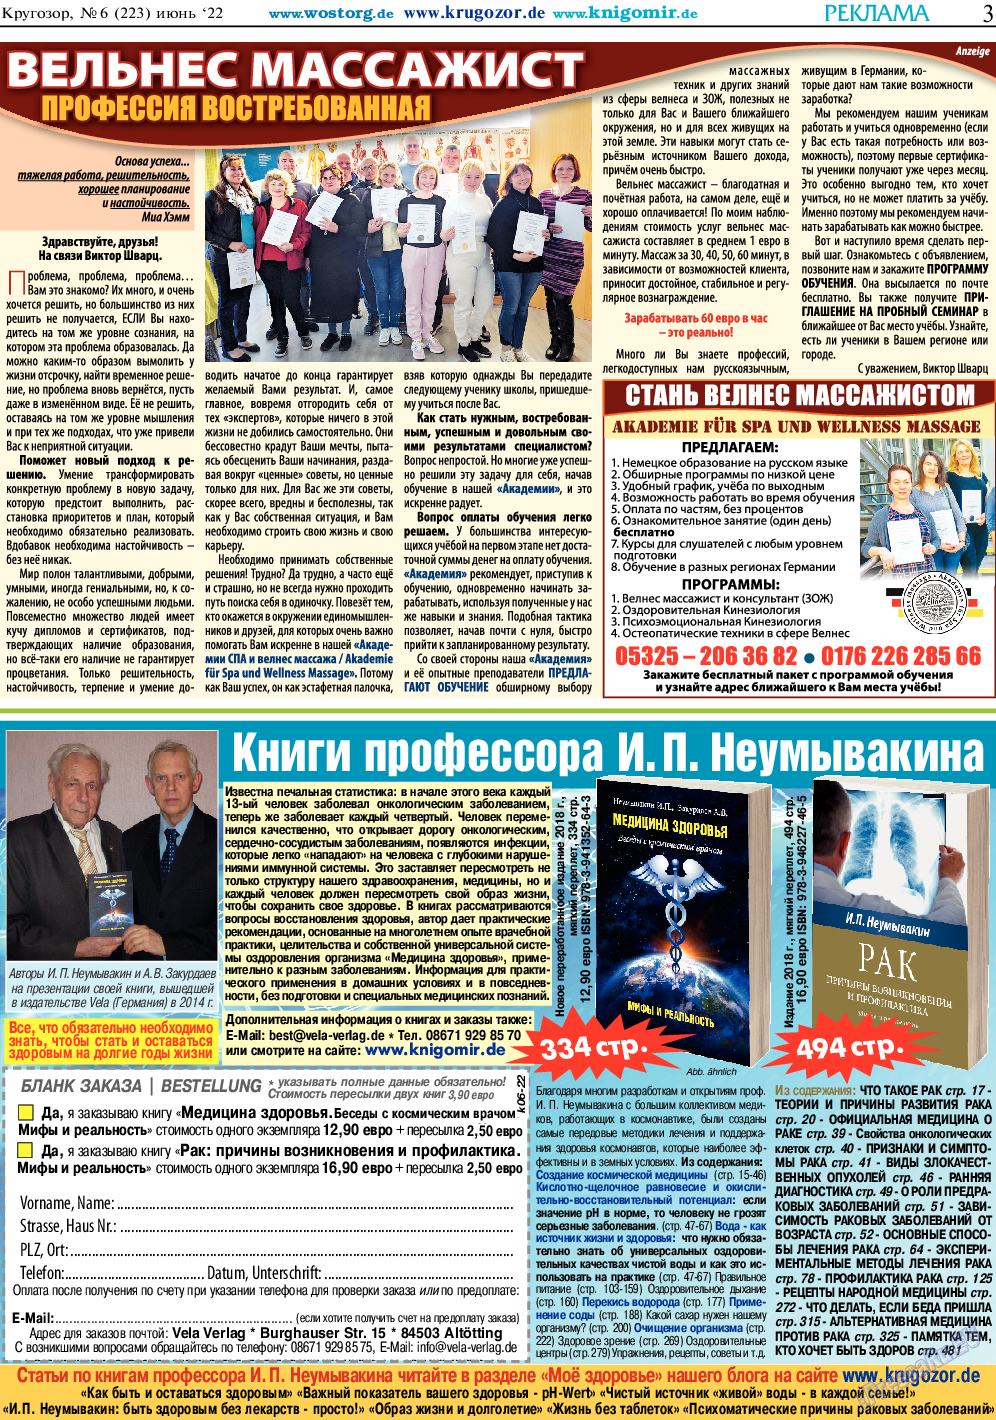 Кругозор, газета. 2022 №6 стр.3